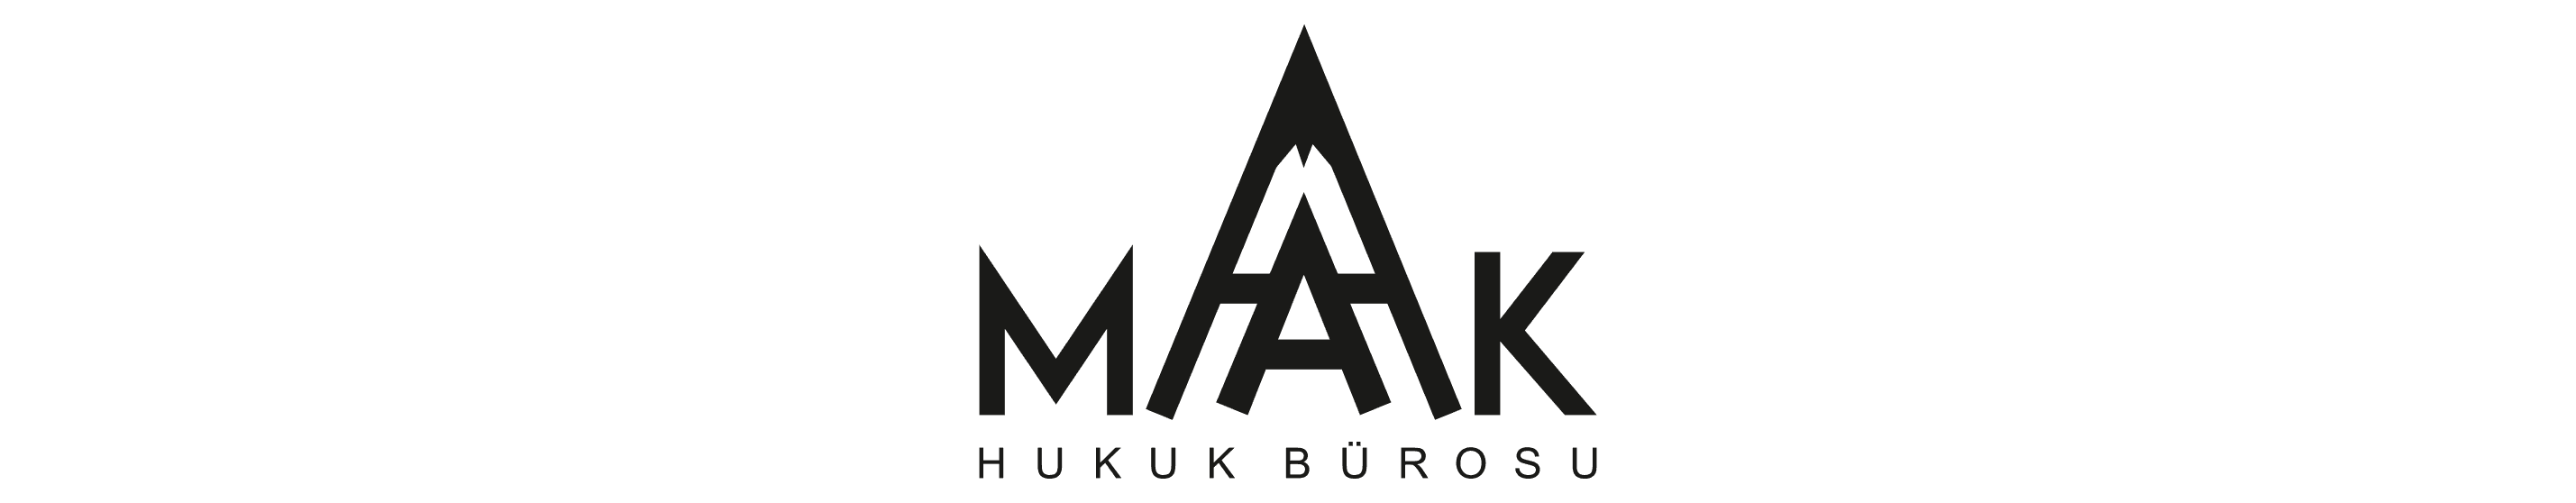 MAK Hukuk